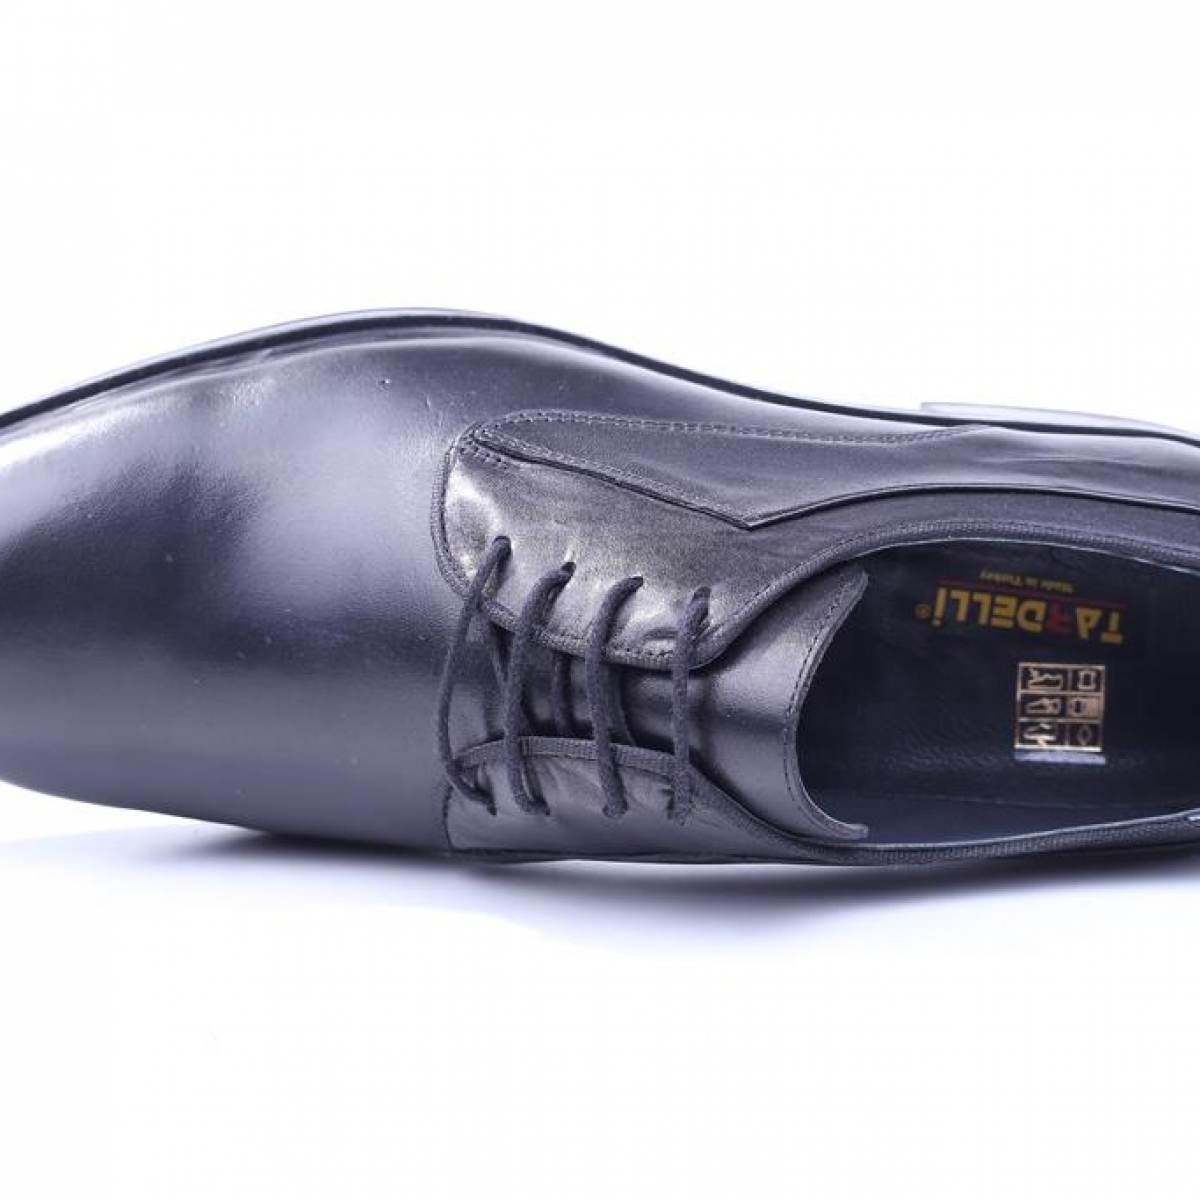 Flo Tardelli 4345 Siyah Büyük Numara Termo Taban Bağcıklı Hakiki Deri Erkek Ayakkabı. 4